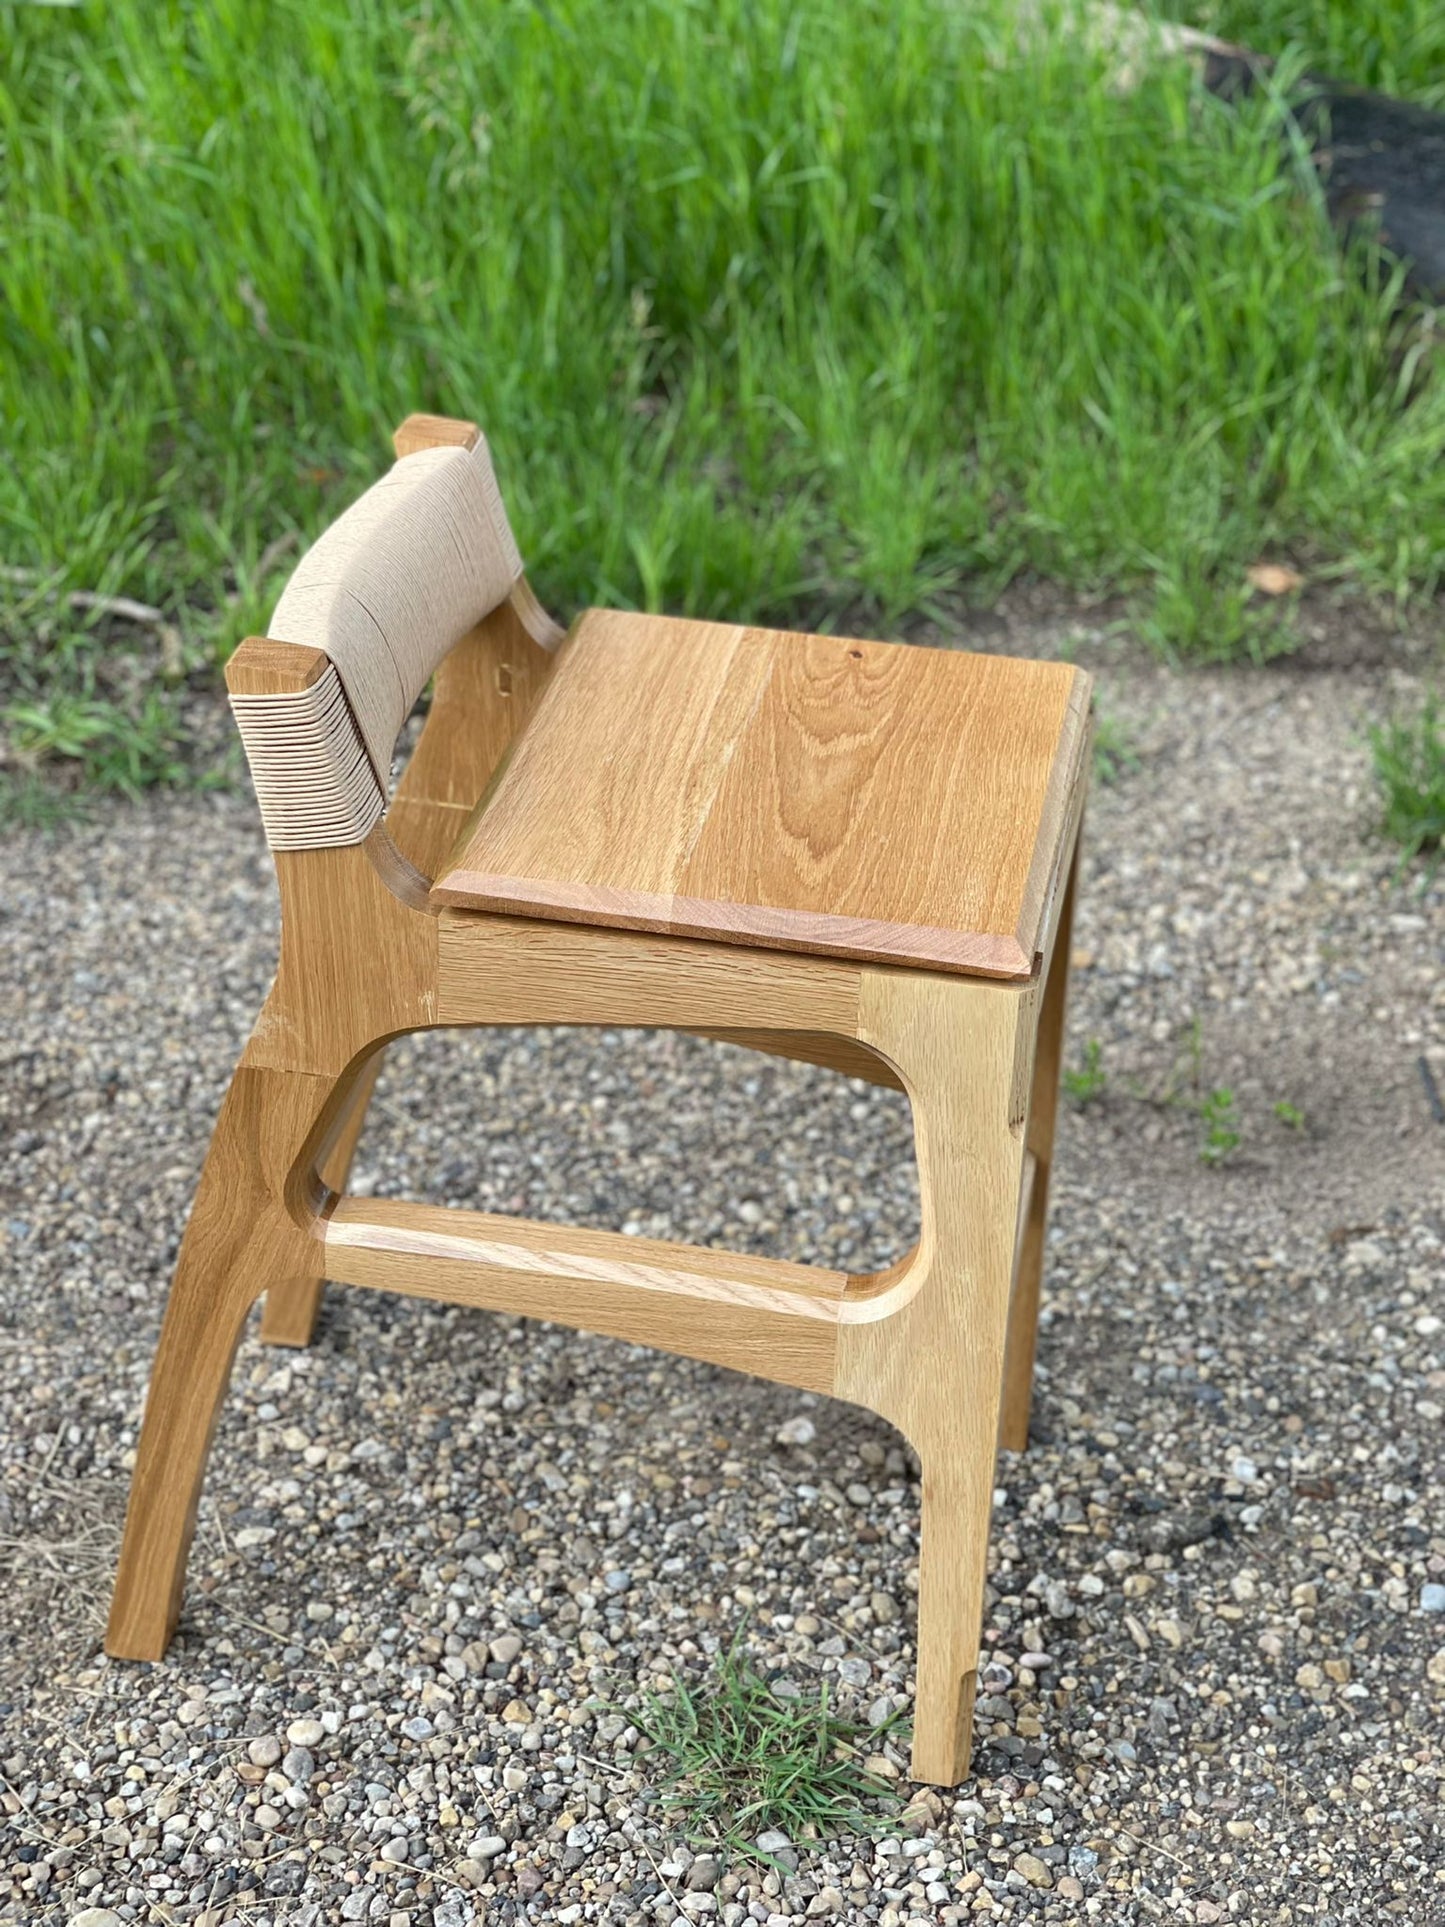 Jango bar/counter stool